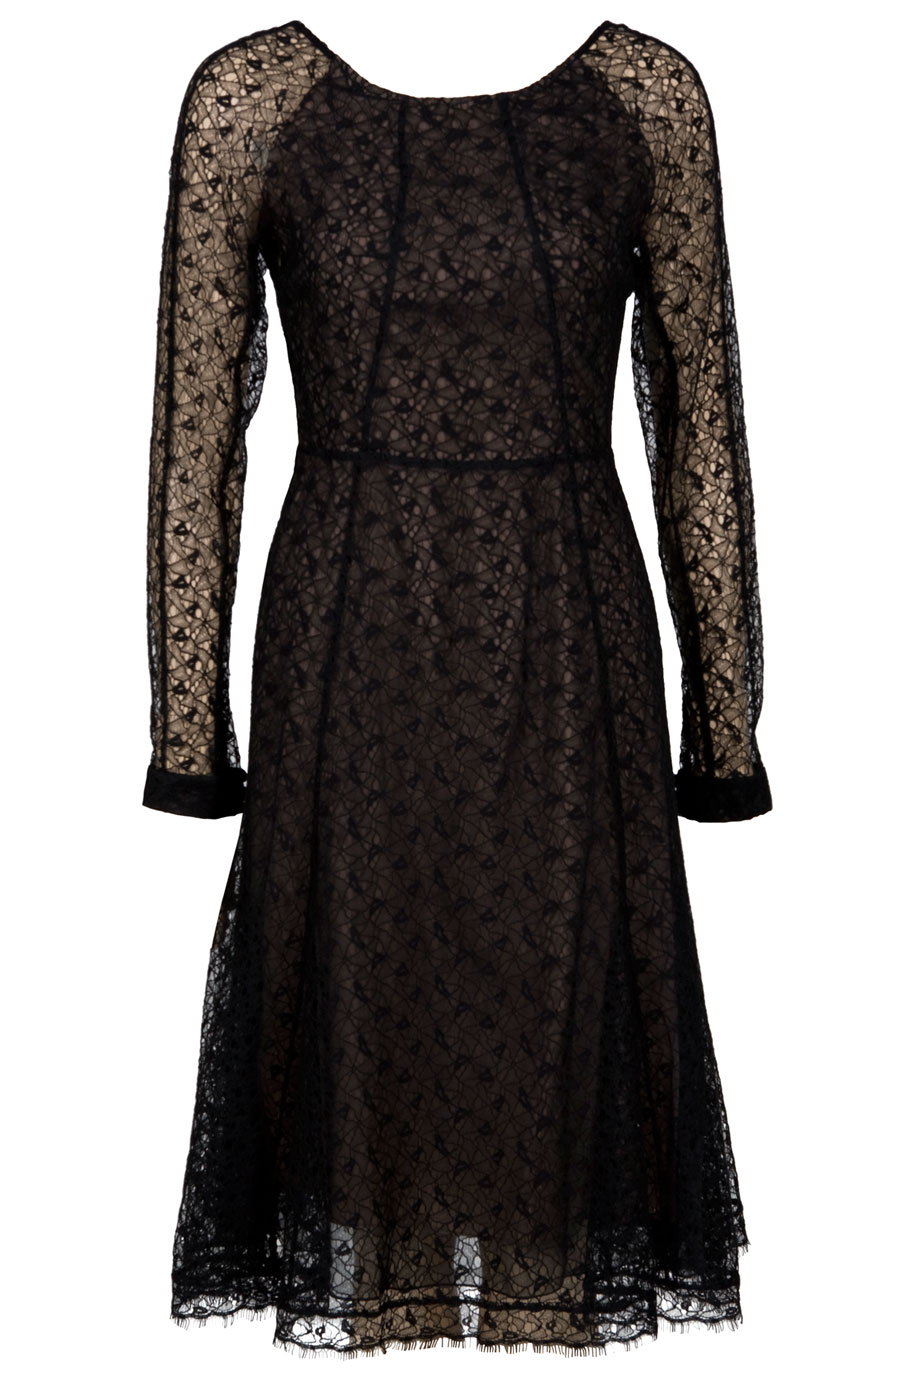 Lyst - Erdem Giselle Dress in Black